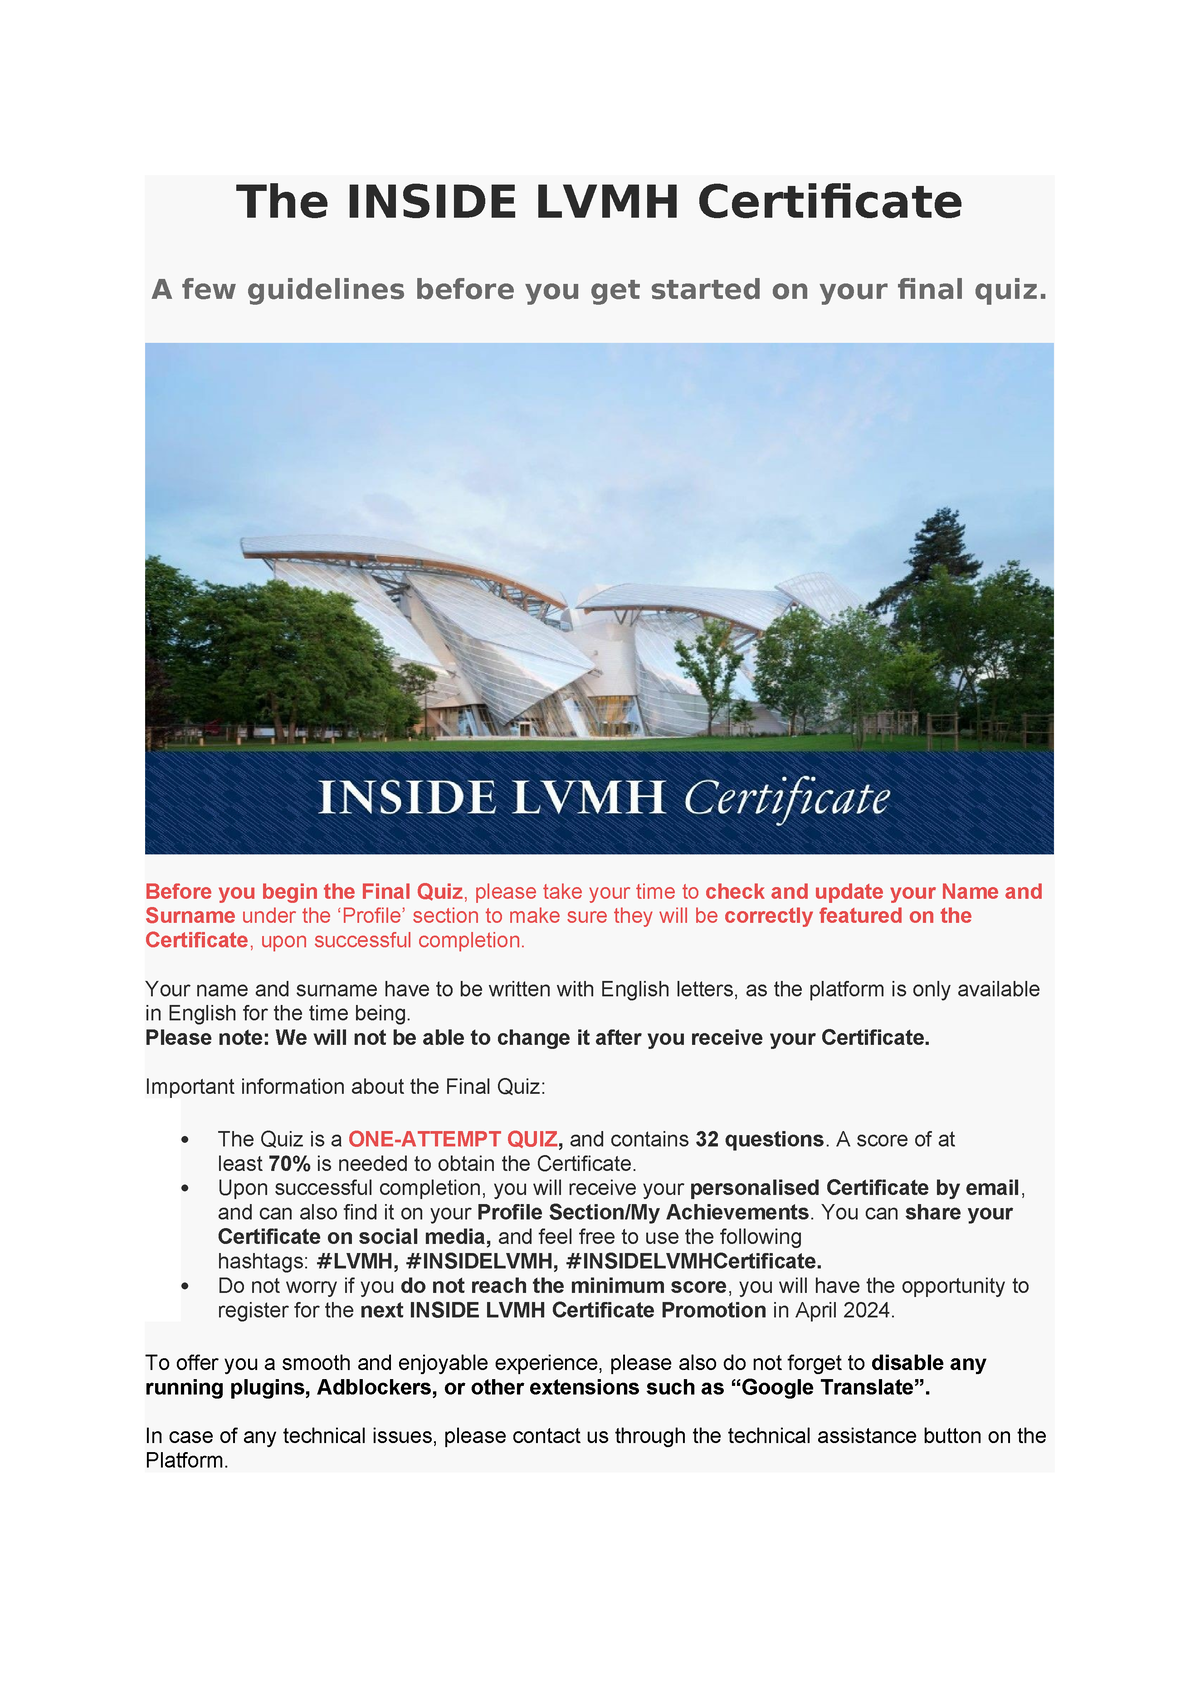 The Inside LVMH Certificate The INSIDE LVMH Certificate A few